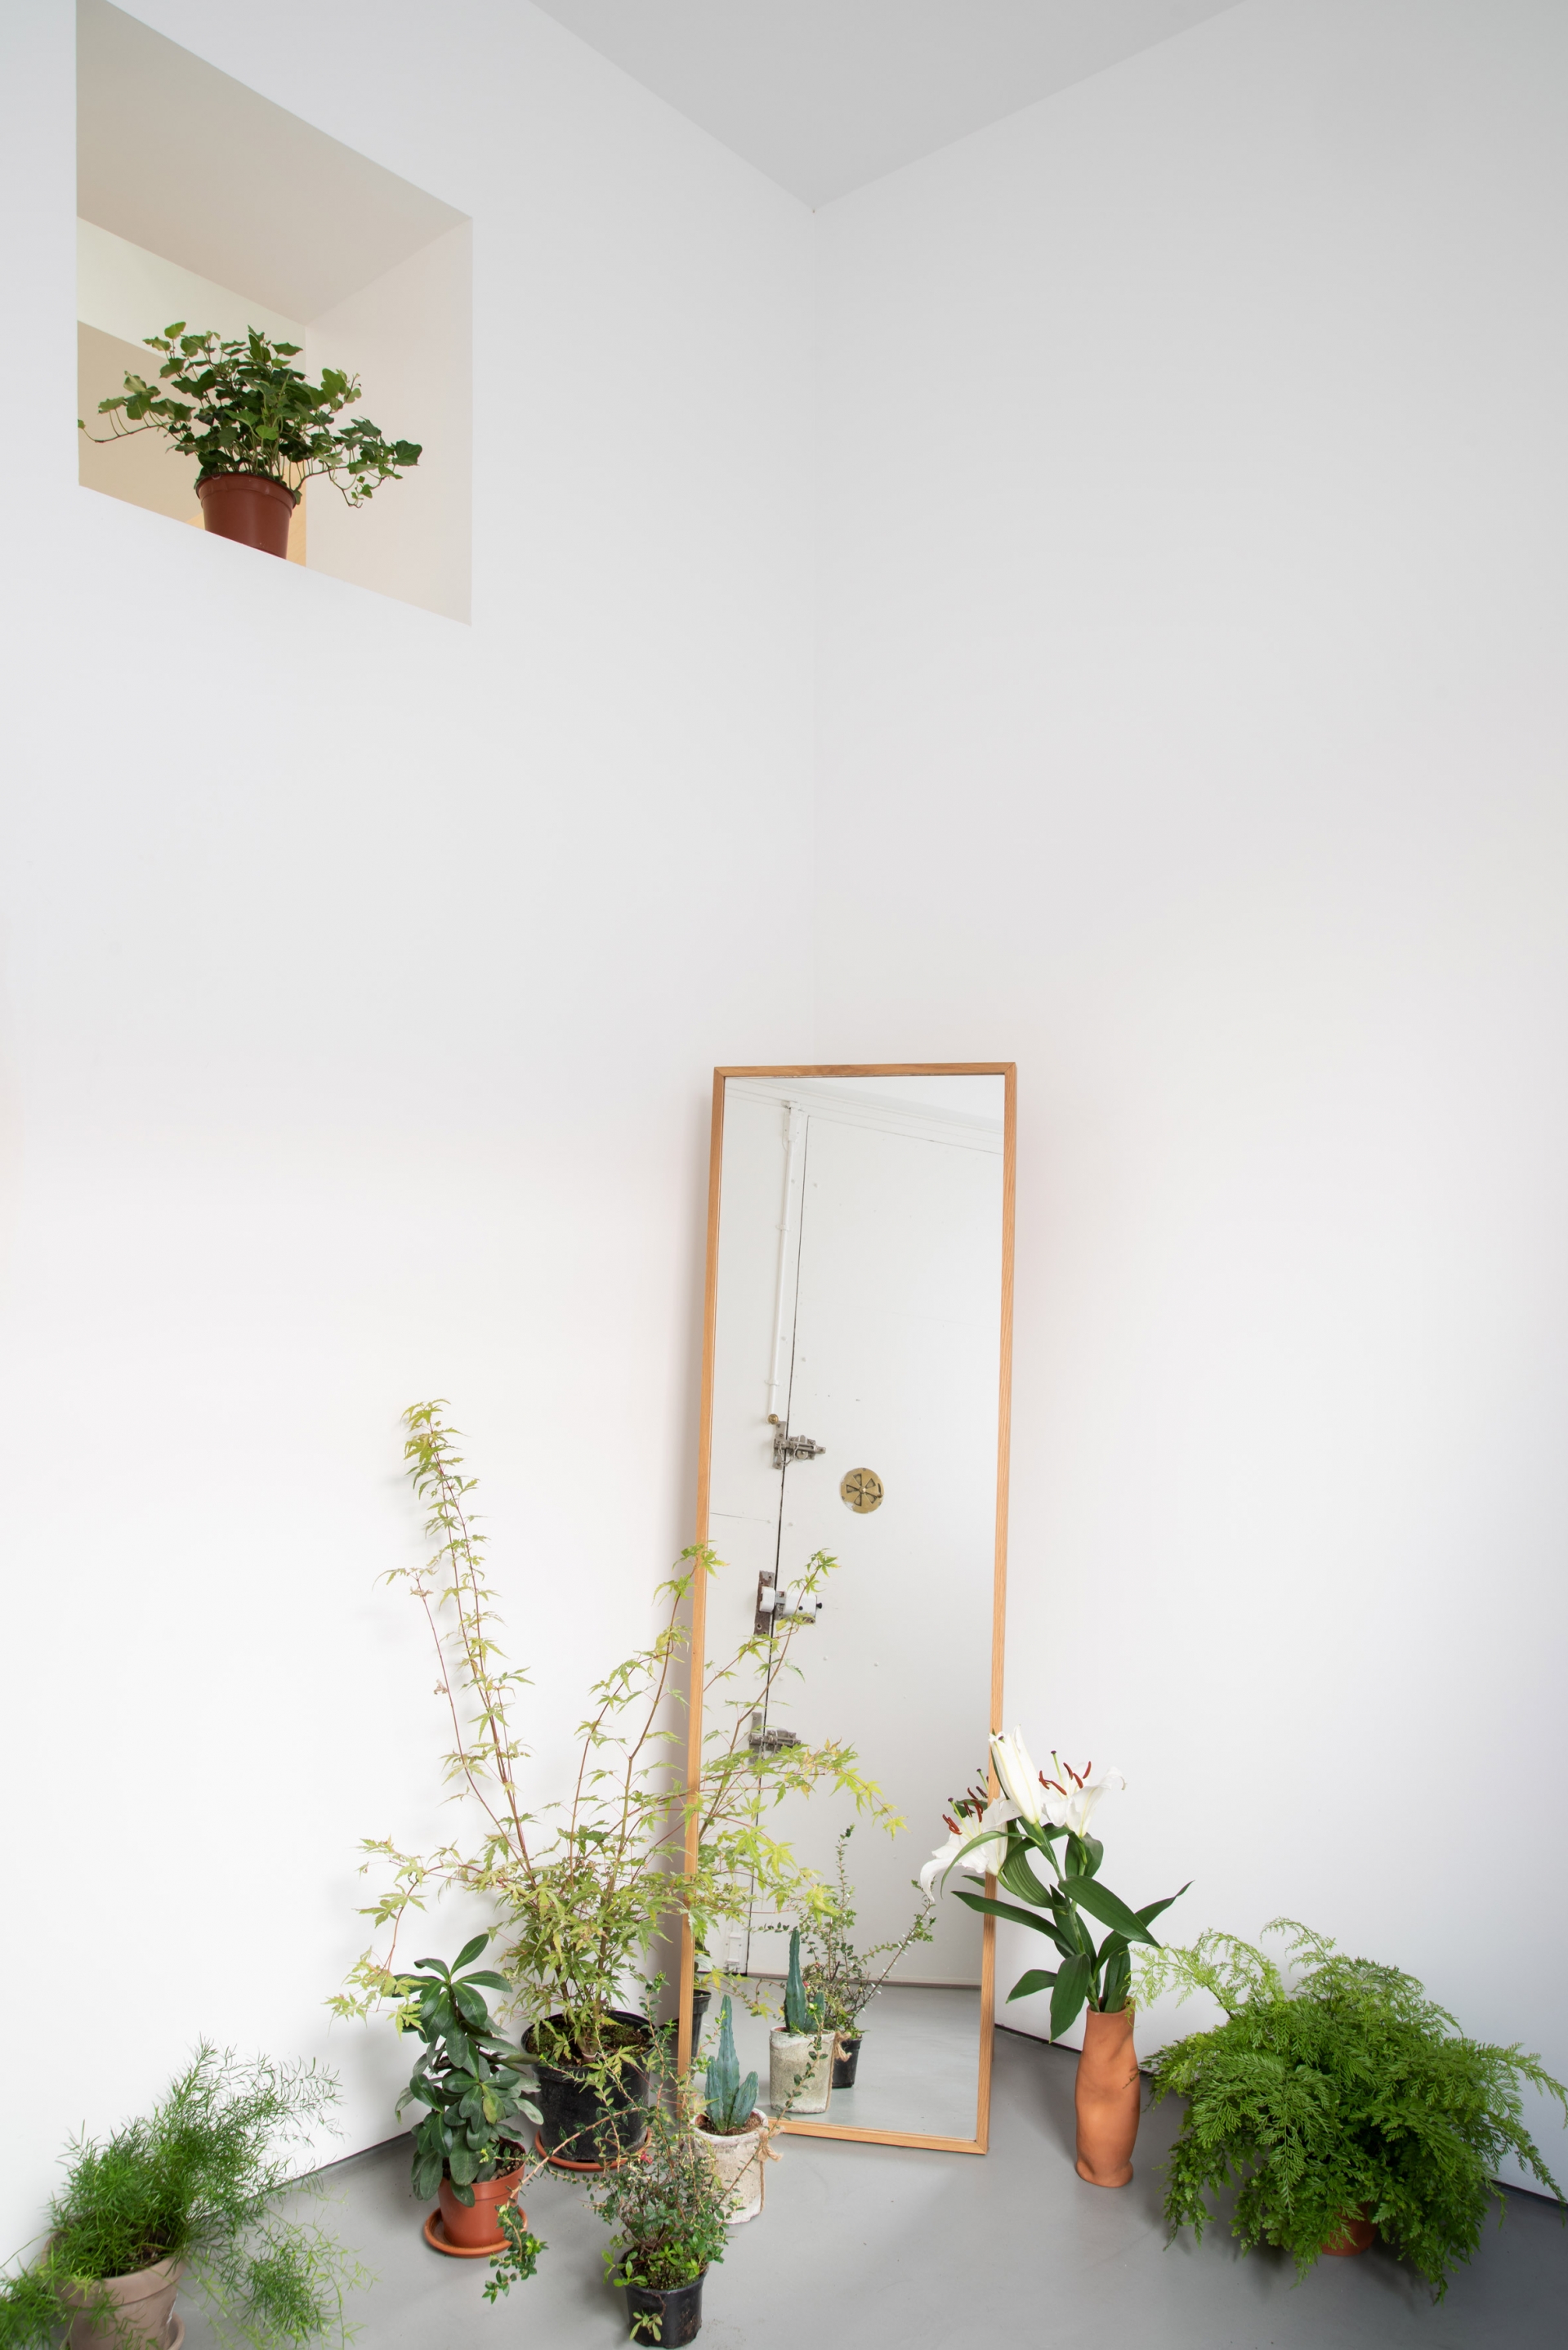 Hành lang lối vào được coi là không gian chuyển tiếp giữa bên trong và bên ngoài. Một loạt các cây trồng trong nhà nằm ở một góc, và một cửa sổ nhỏ trên tường tạo cảm giác sáng sủa.